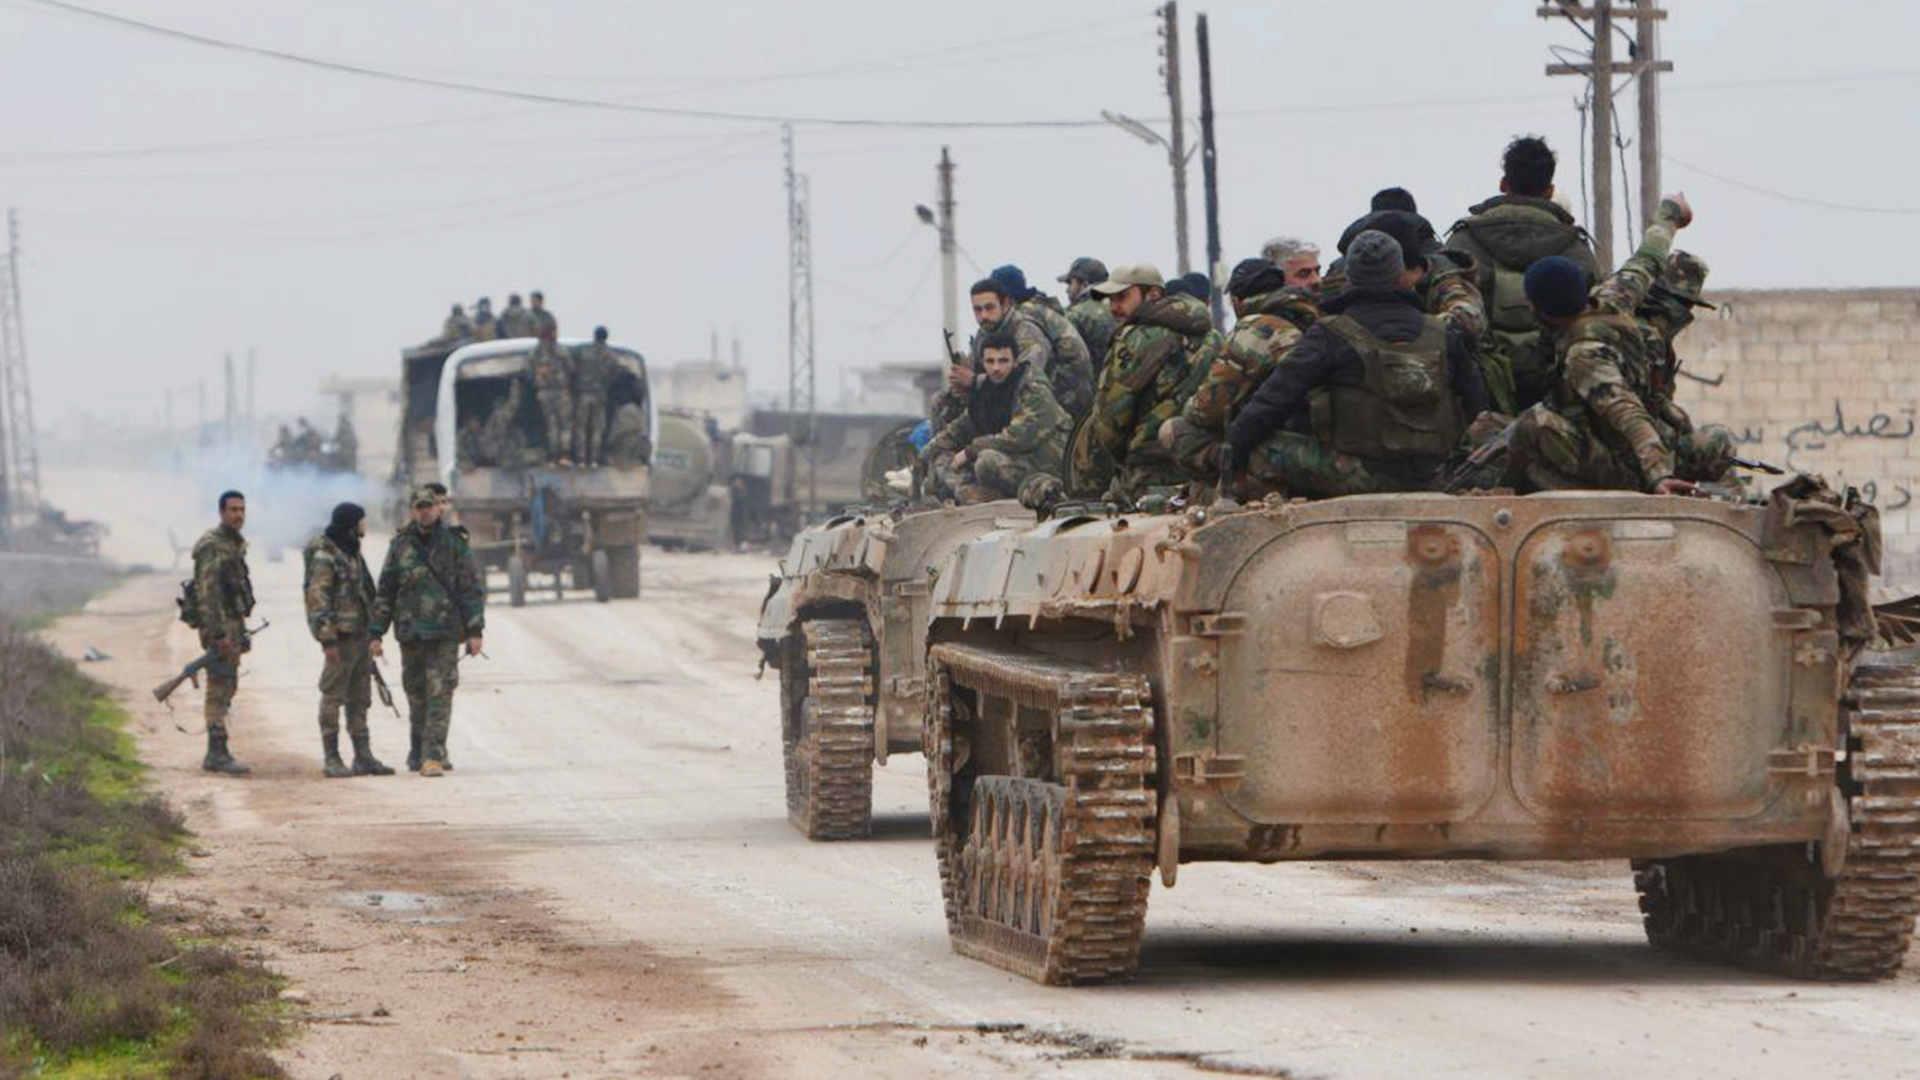 كشفت مصادر محلية عن تزايد الصراع الروسي الإيراني جنوب سورية، حيث يستمر الطرفان بإرسال التعزيزات العسكرية إلى محافظة درعا